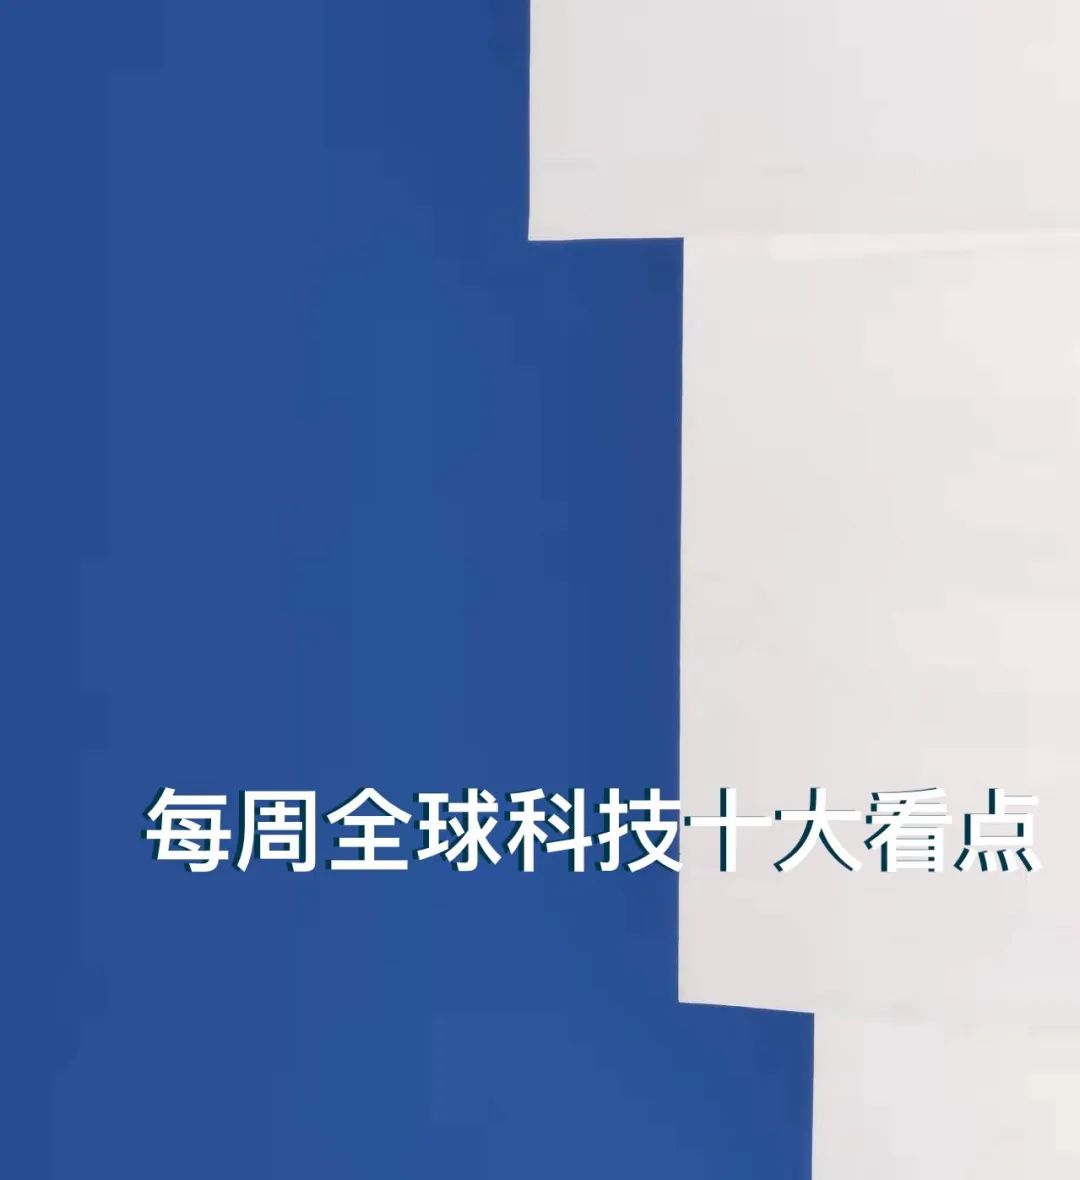 佳士科技4145万元摘惠州一宗地块拟建亿沃科技产业园